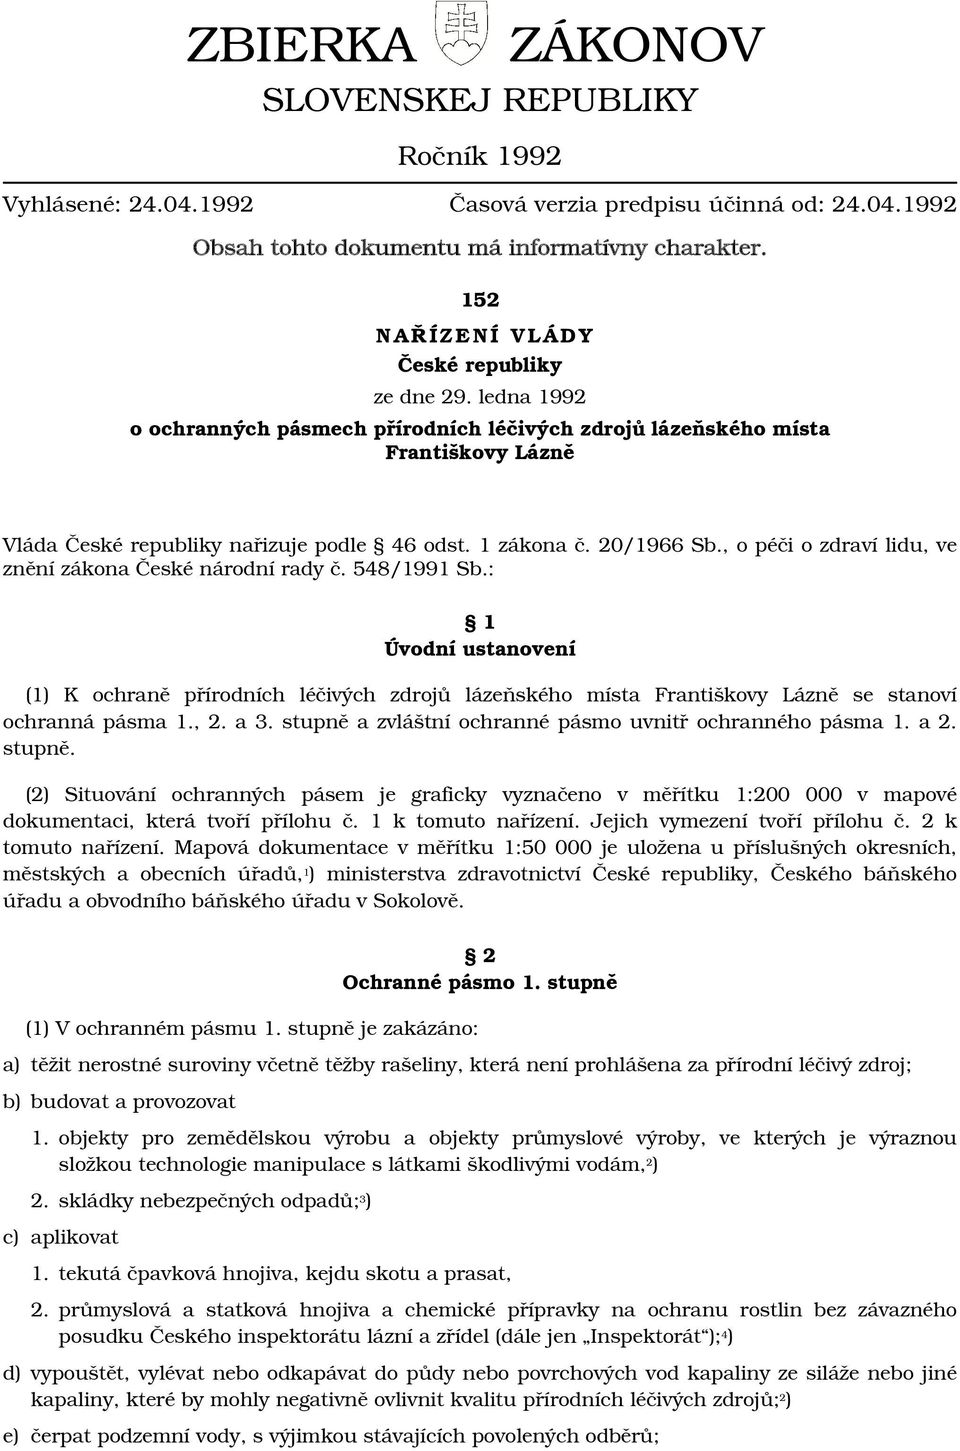 1 zákona č. 20/1966 Sb., o péči o zdraví lidu, ve znění zákona České národní rady č. 548/1991 Sb.